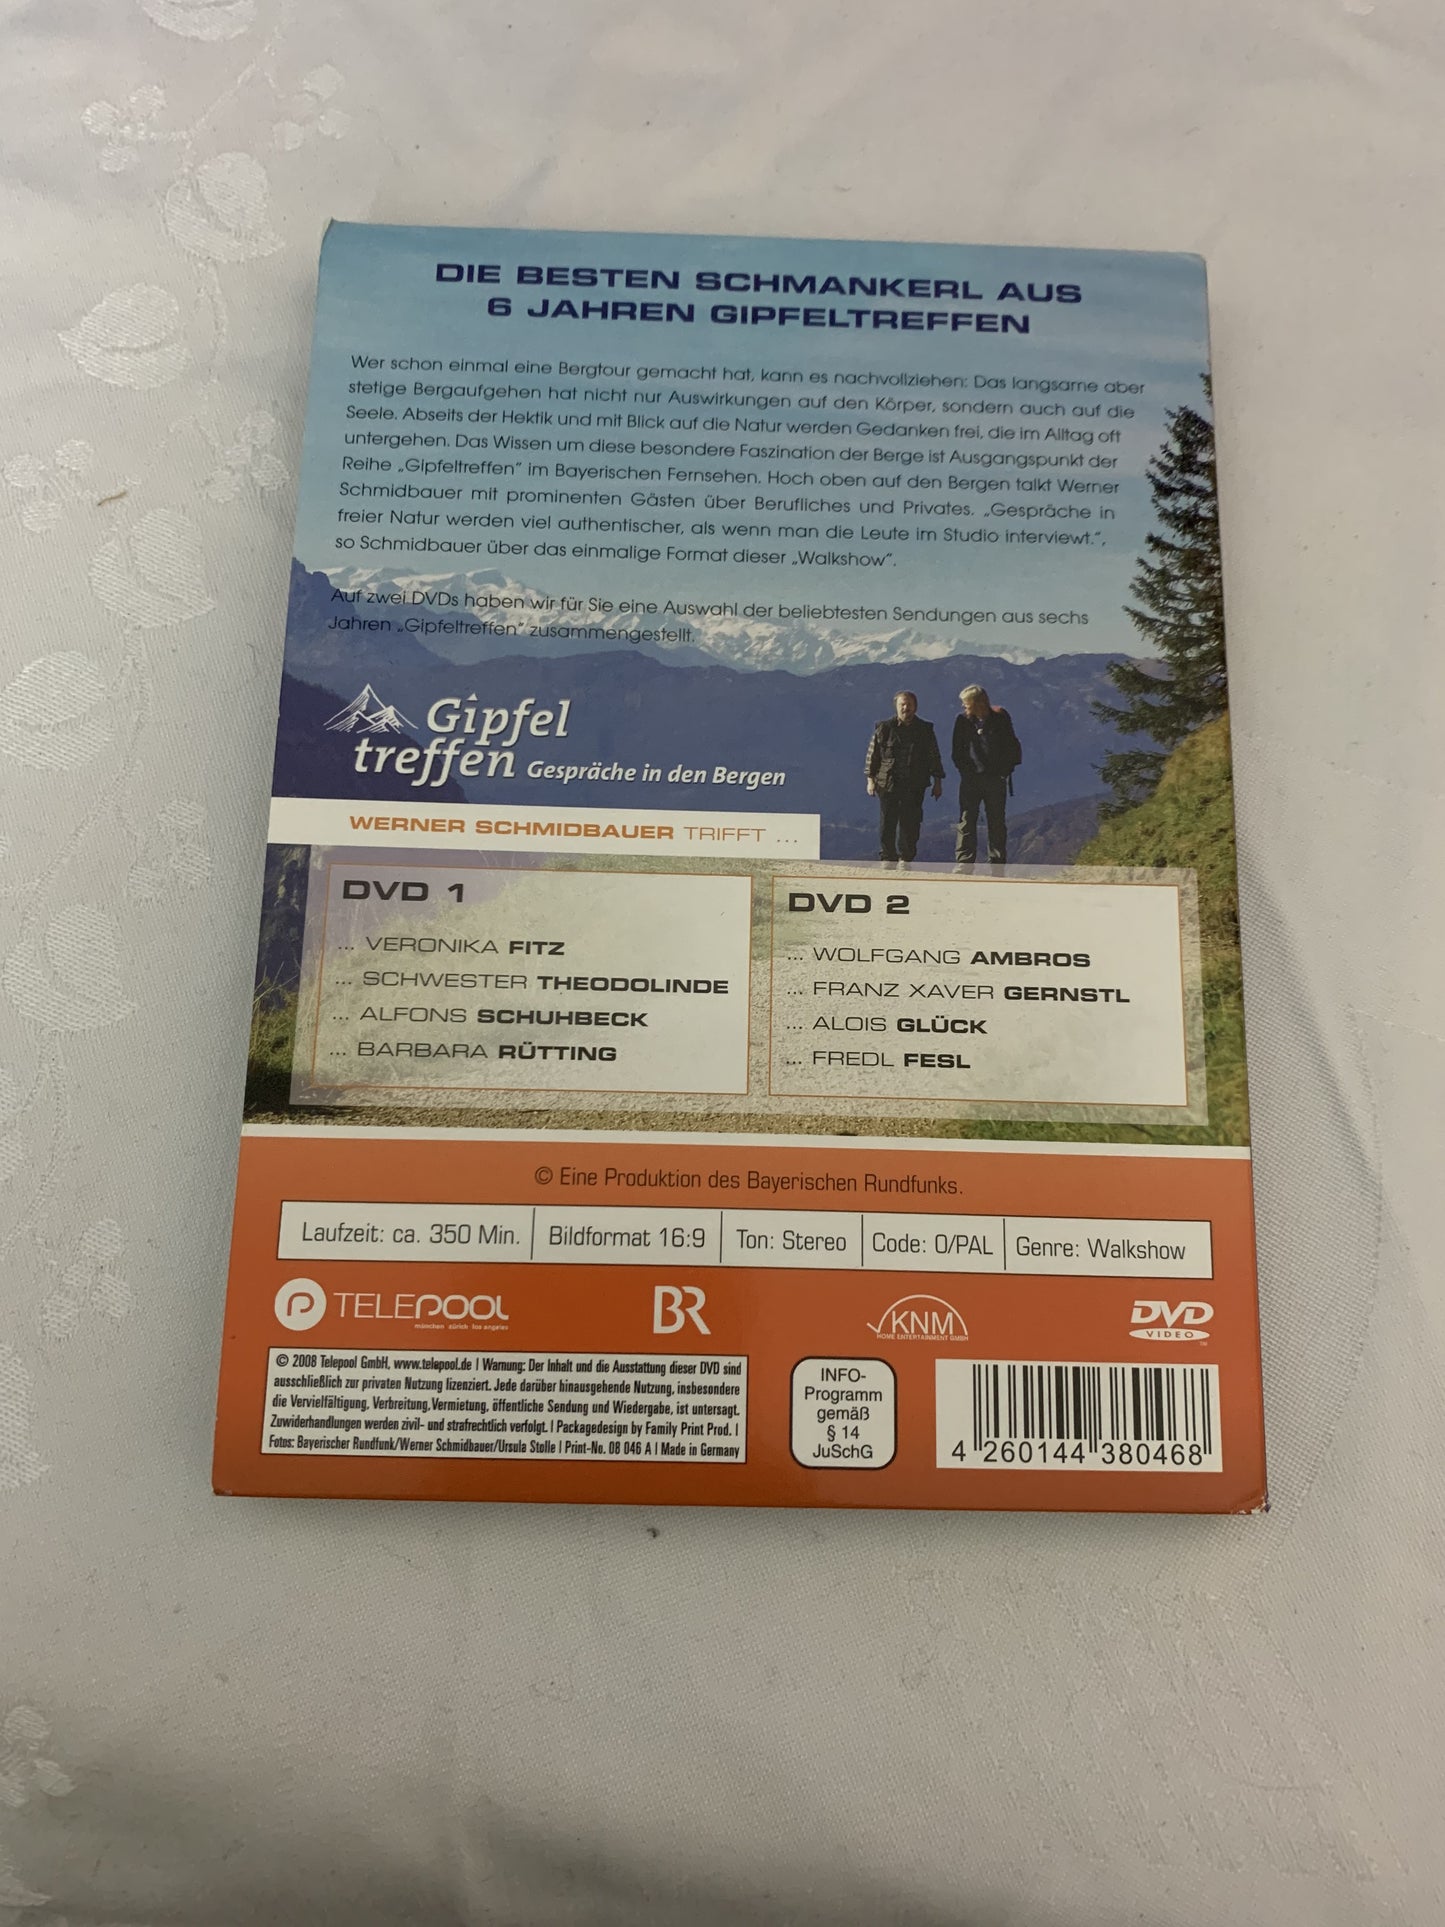 Gipfeltreffen 2 DVDs